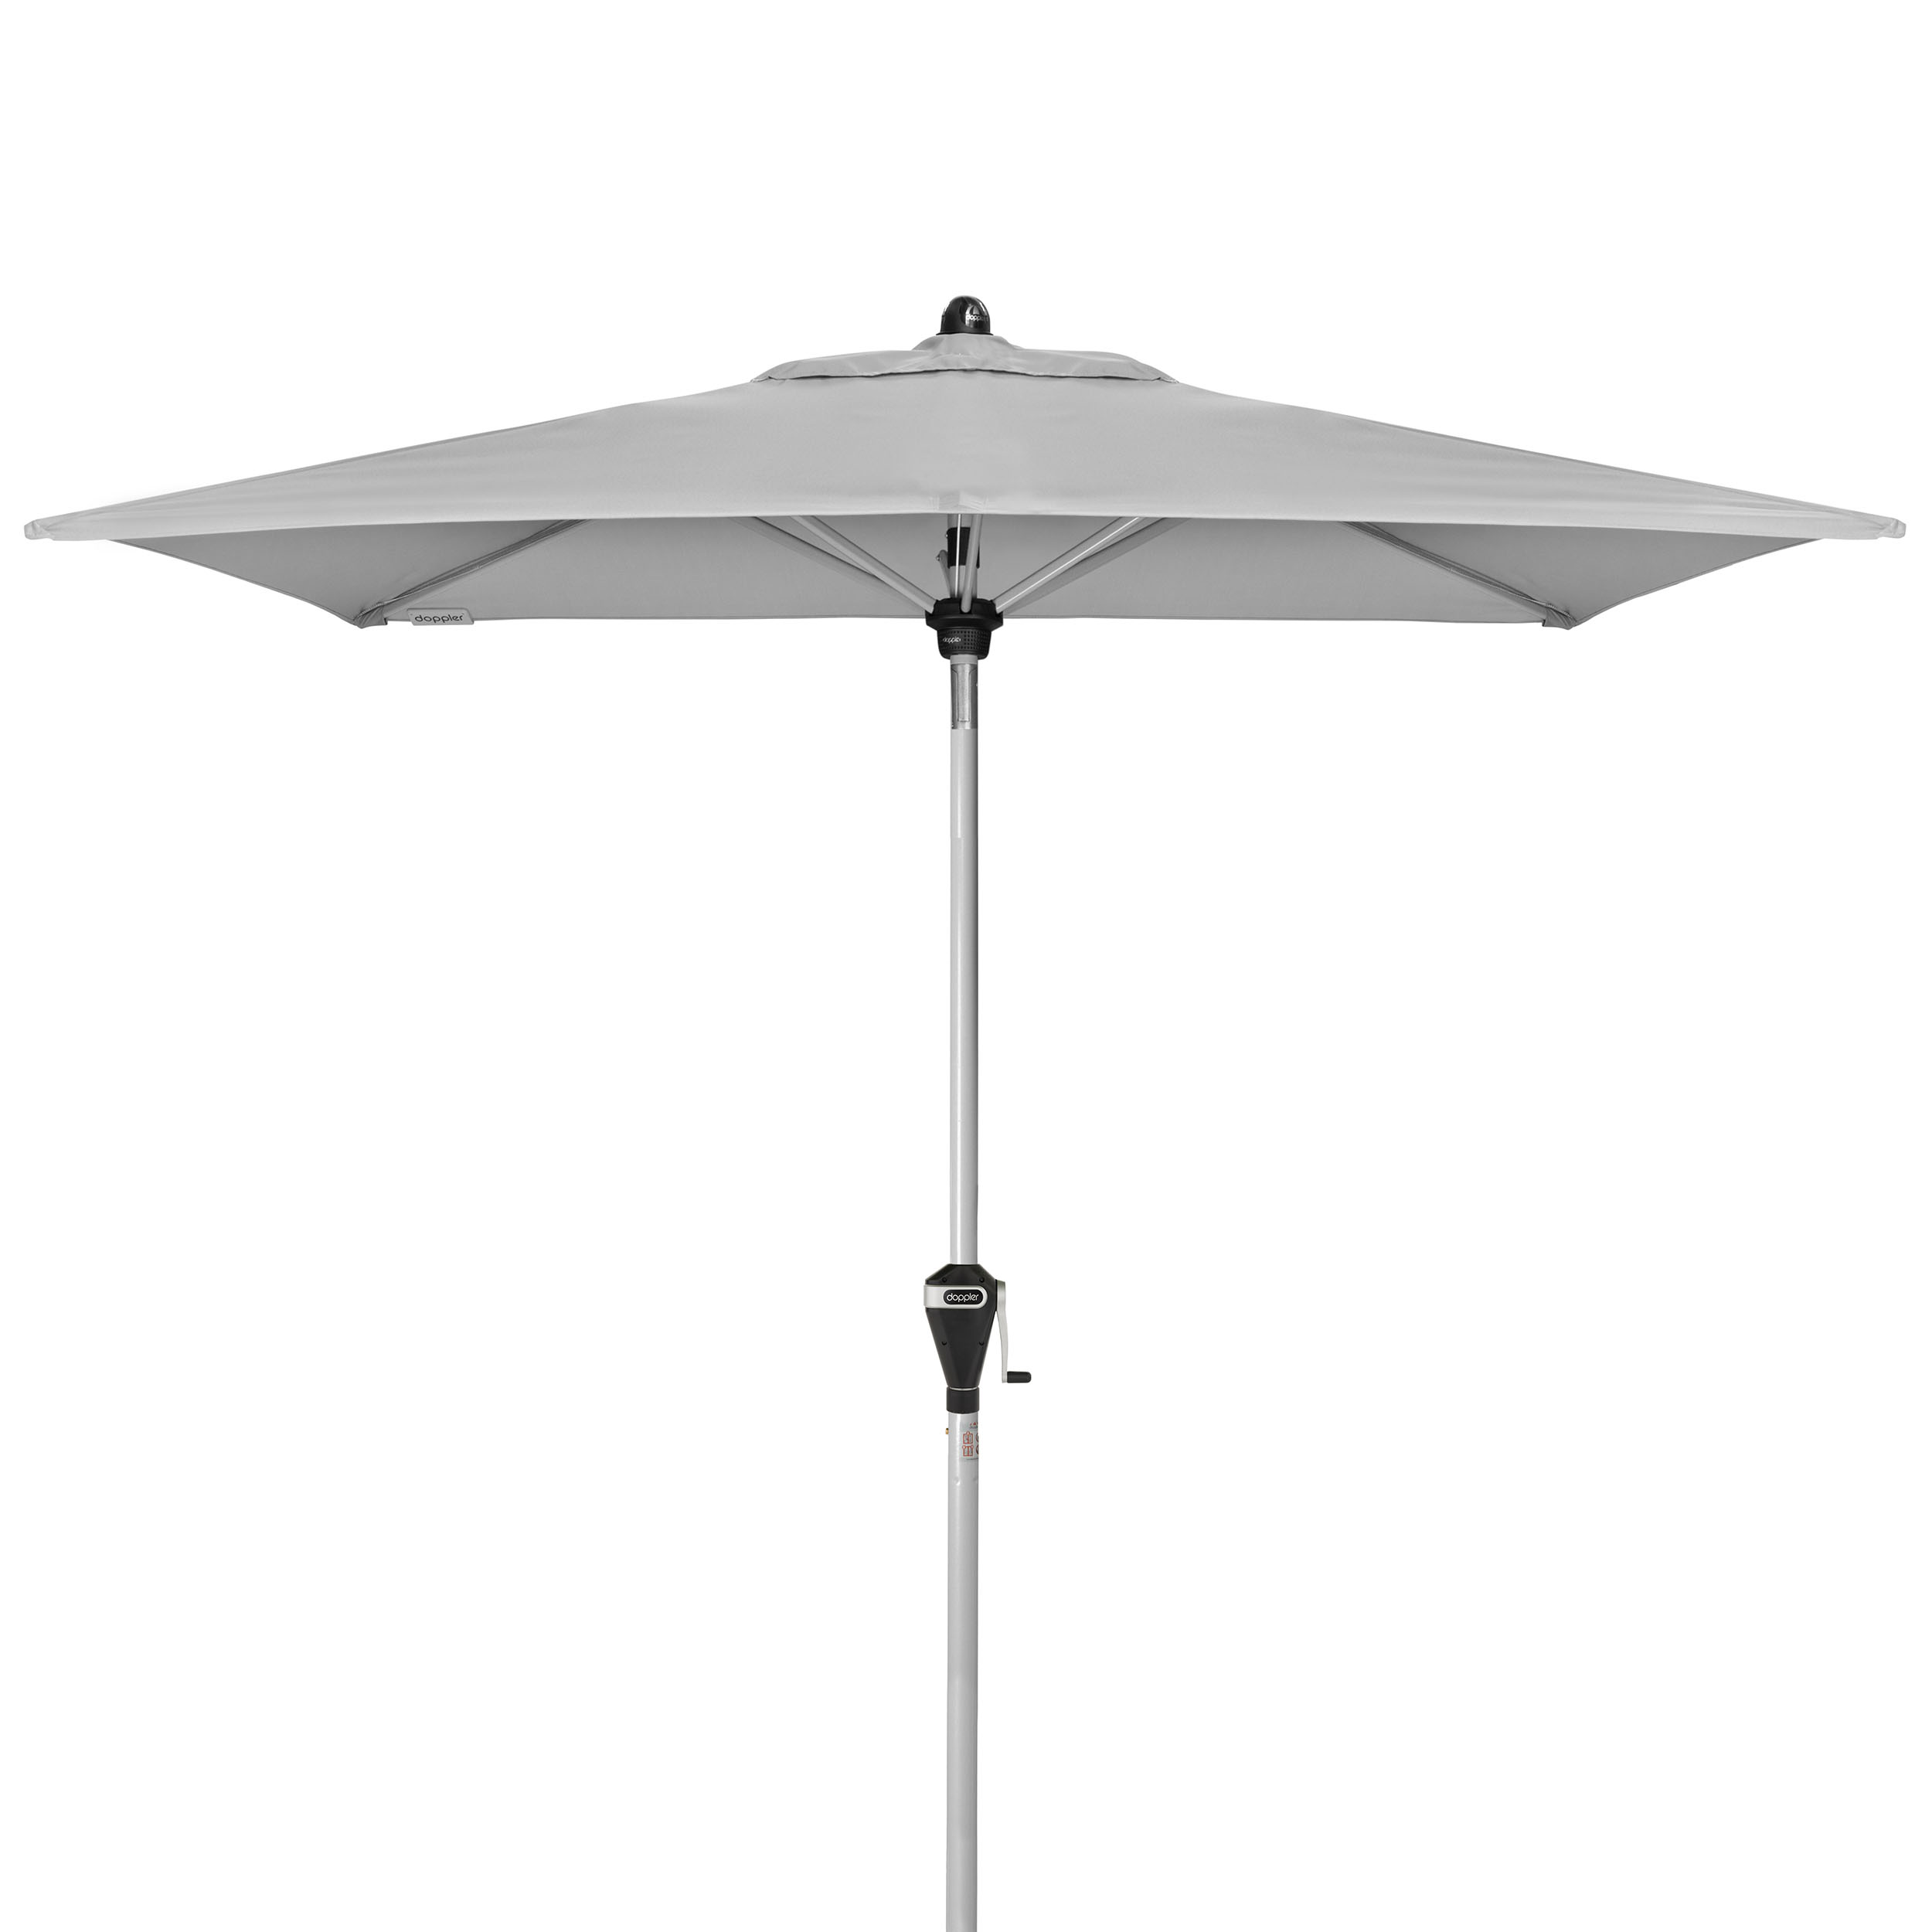 Active Auto Tilt Sonnenschirm ohne Schirmständer